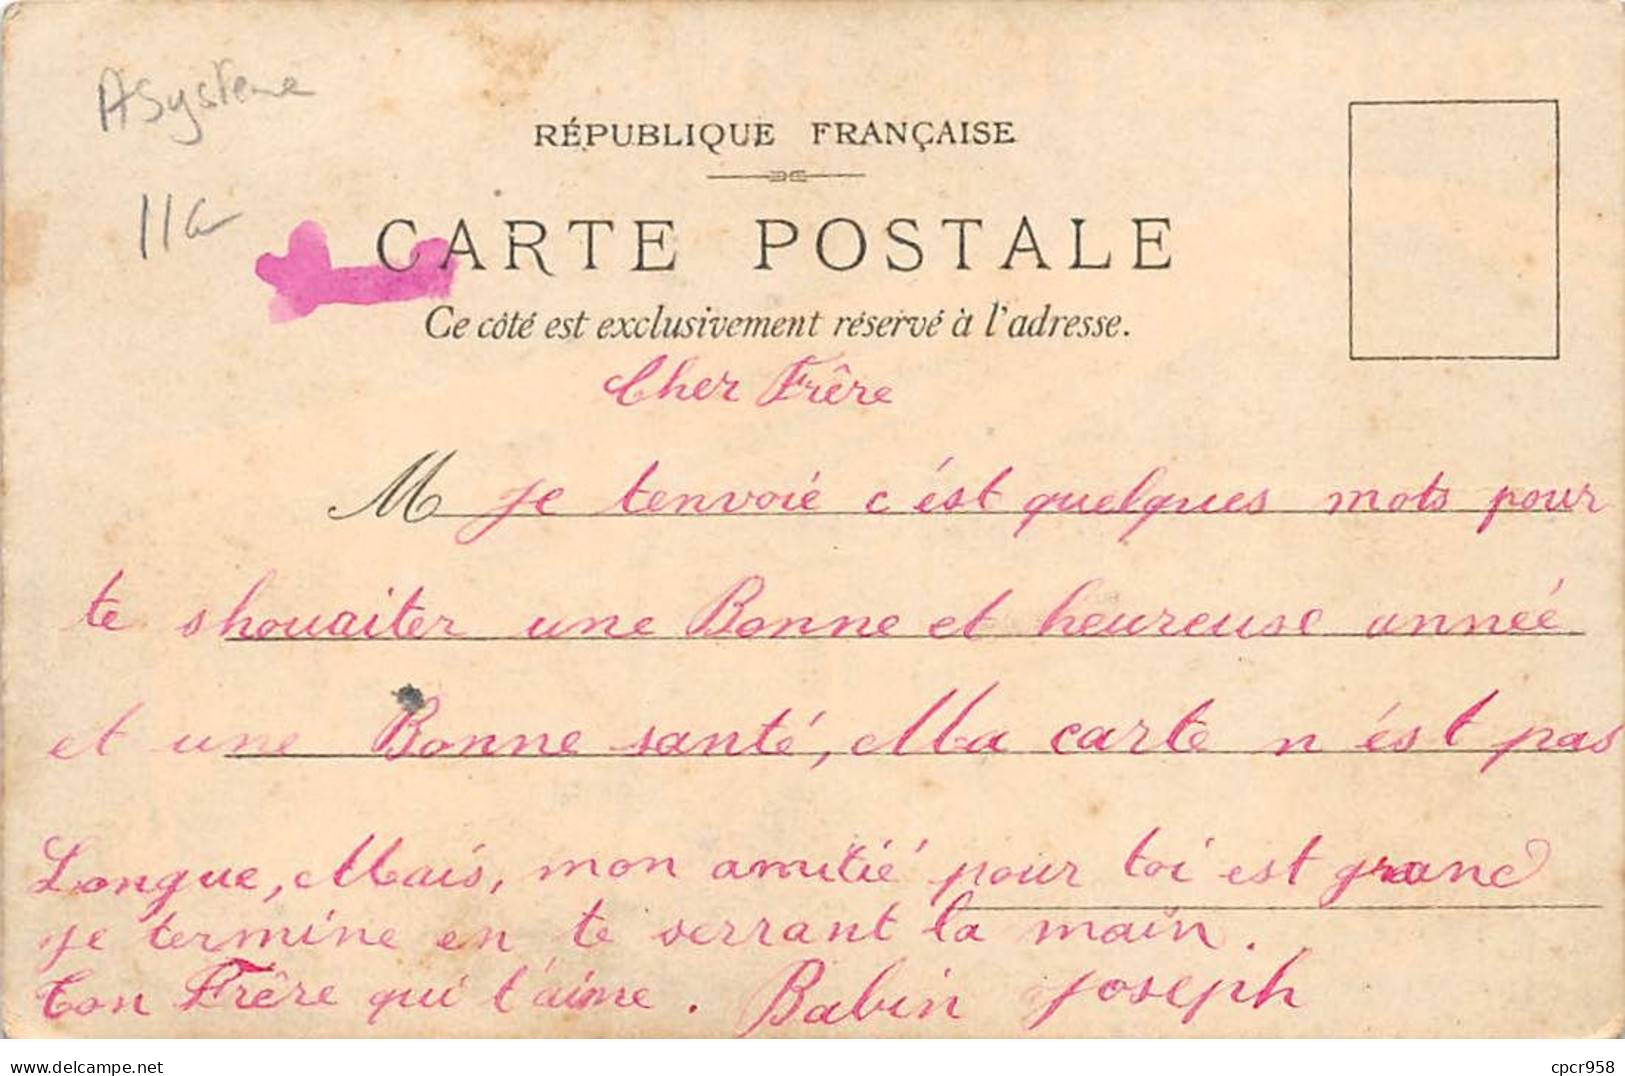 Carte à Système - N°87954 - Carte Transparente - Biscuits Lu Lefevre-Utile - Grand Prix - Paris 1900 - Nice - A Systèmes